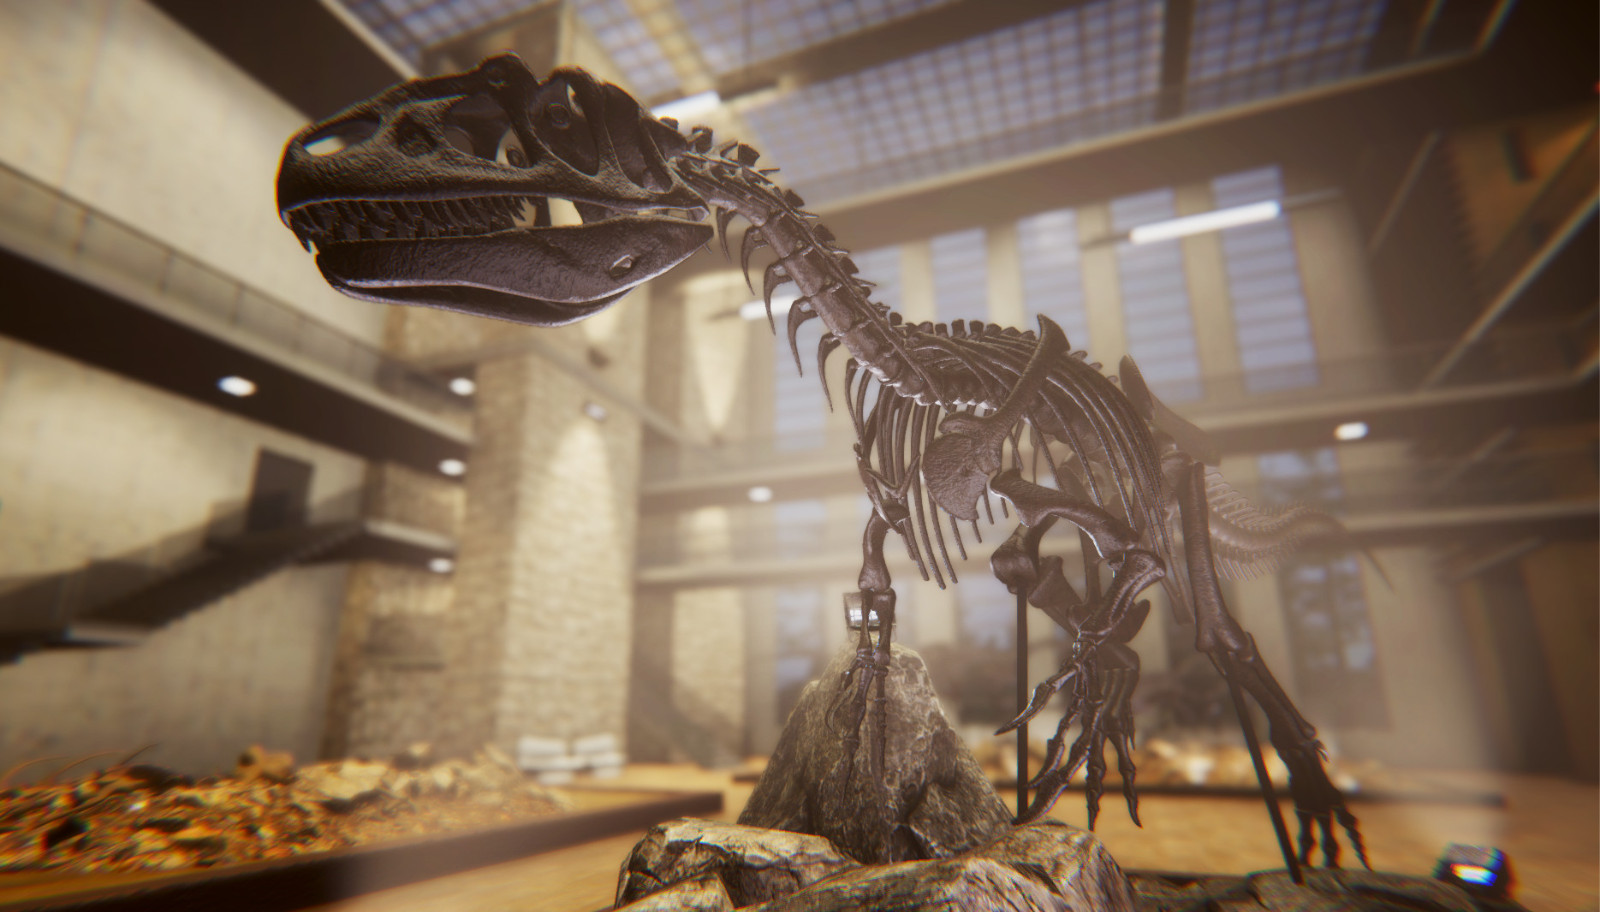 《恐龙化石猎人 古生物学模拟器》4月28日正式发售